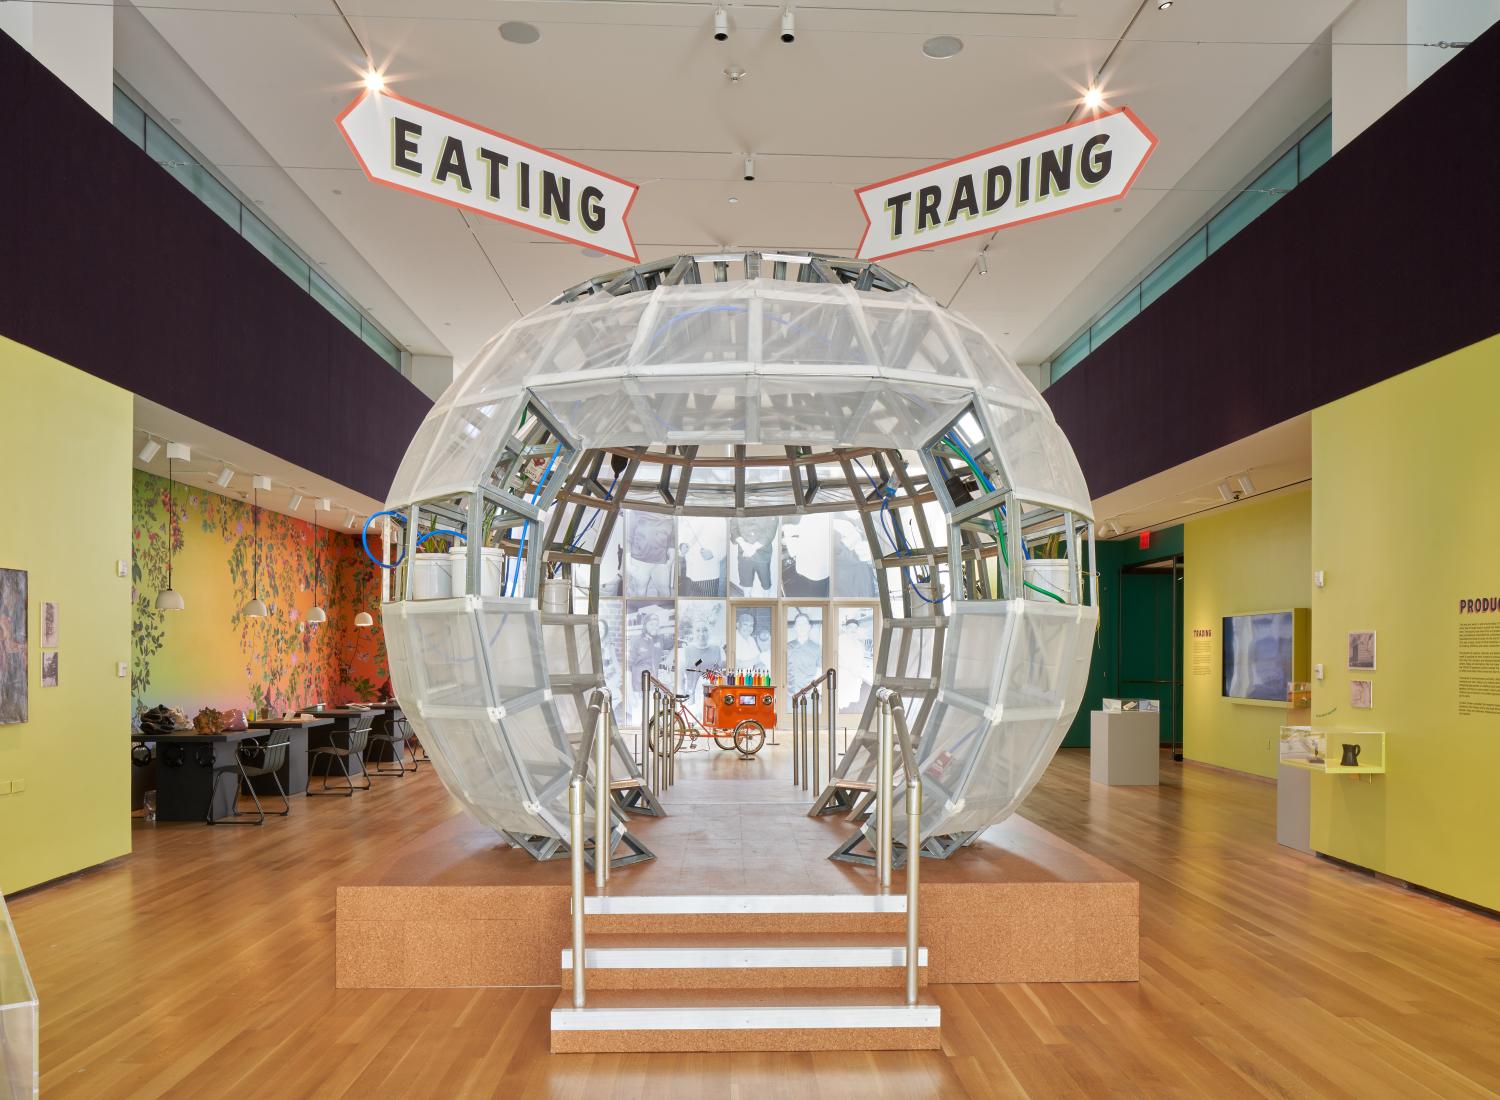 Uma grande esfera clara, semelhante a um globo de neve, fica no centro da imagem com placas que dizem 'comer' e 'negociar' acima dela.